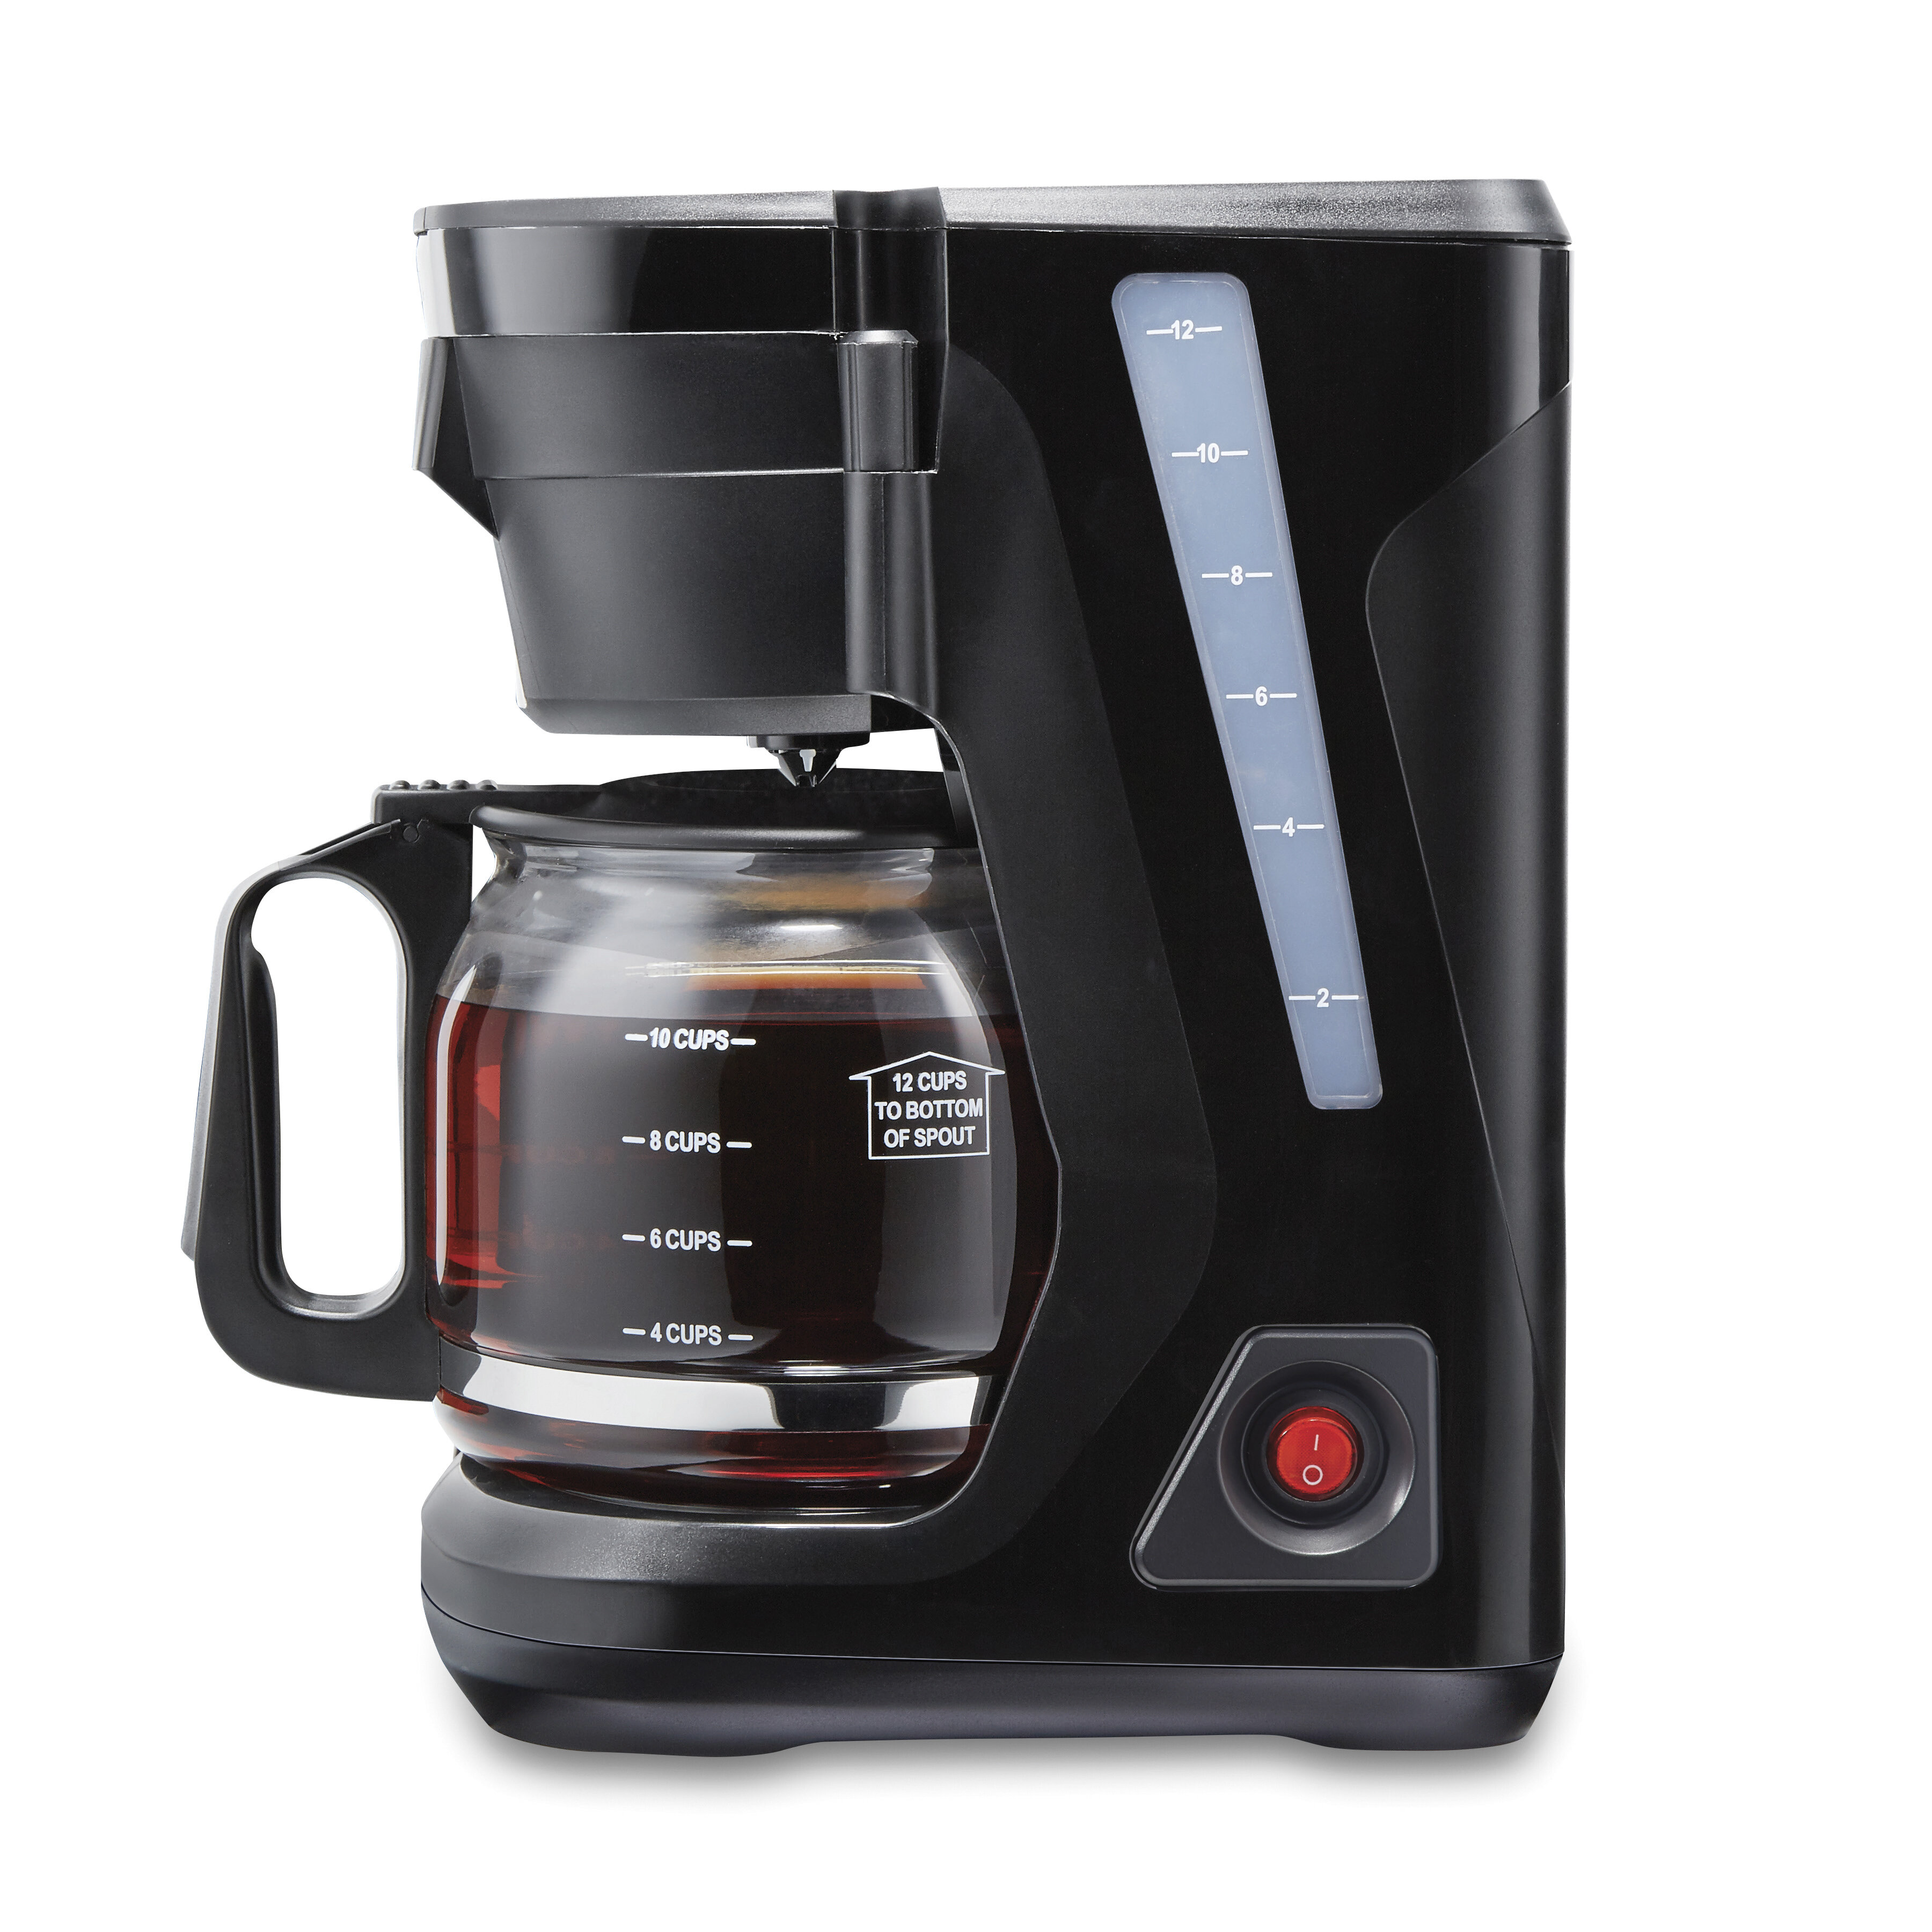 https://assets.wfcdn.com/im/60392130/compr-r85/1400/140073706/proctor-silex-12-cup-frontfill-coffee-maker.jpg